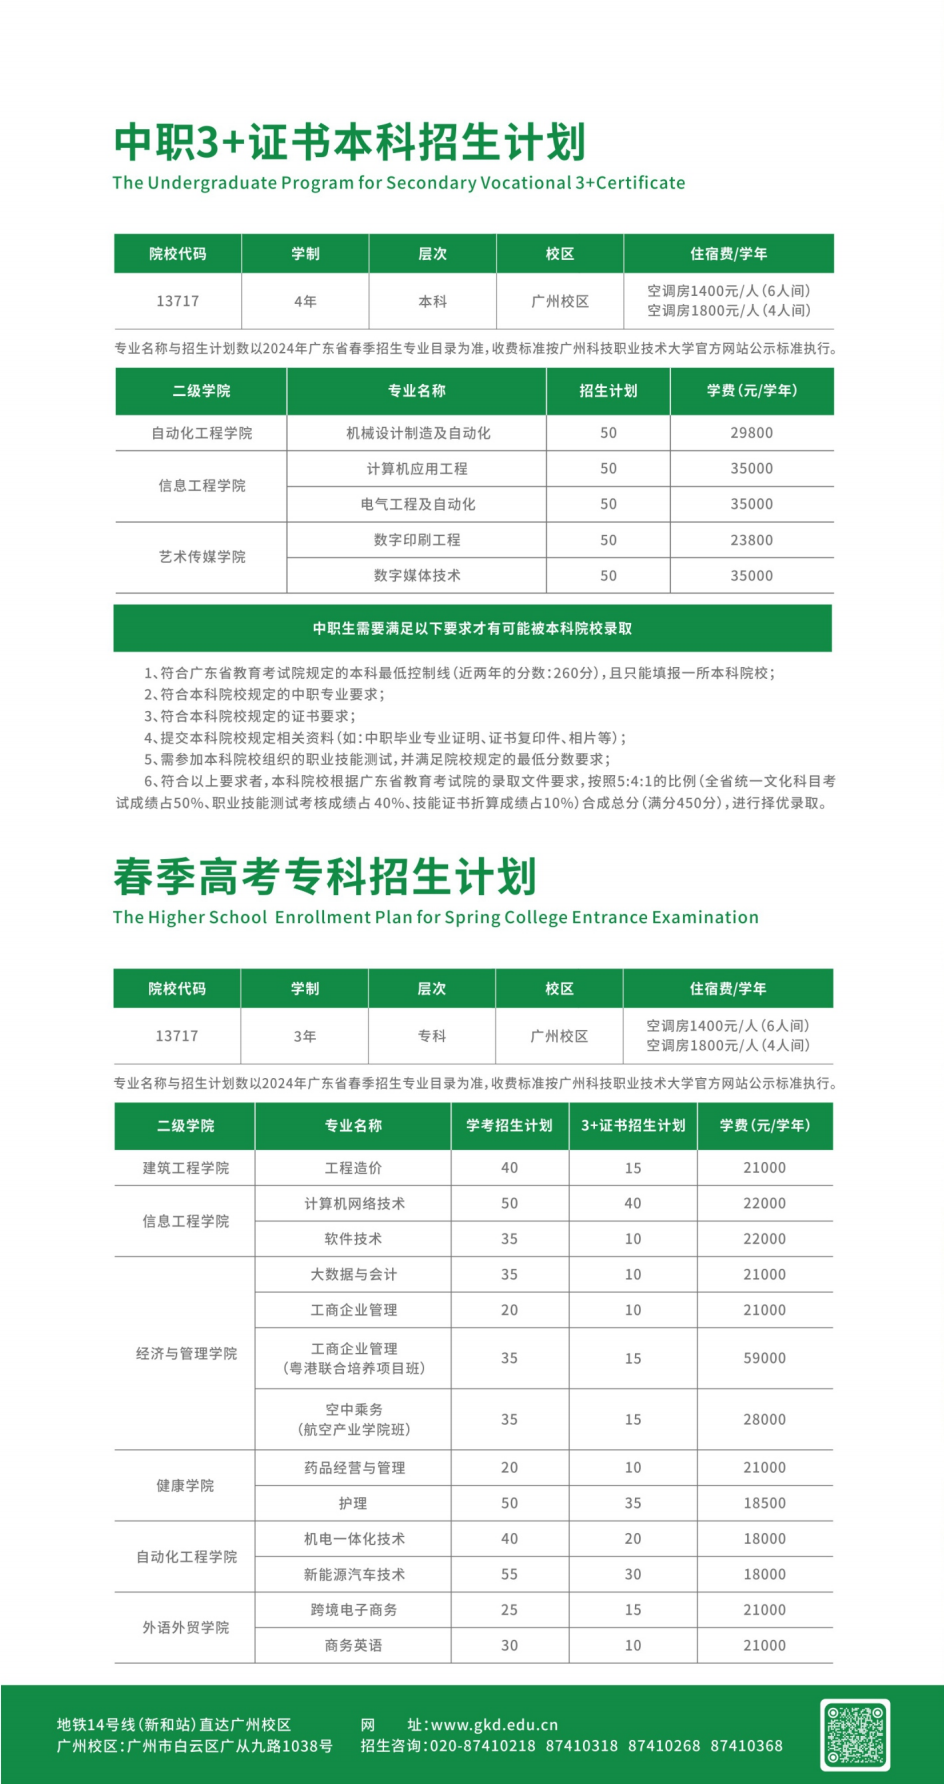 广州科技职业技术大学－2024年中职3+证书本科招生计划 / 春季高考专科招生计划